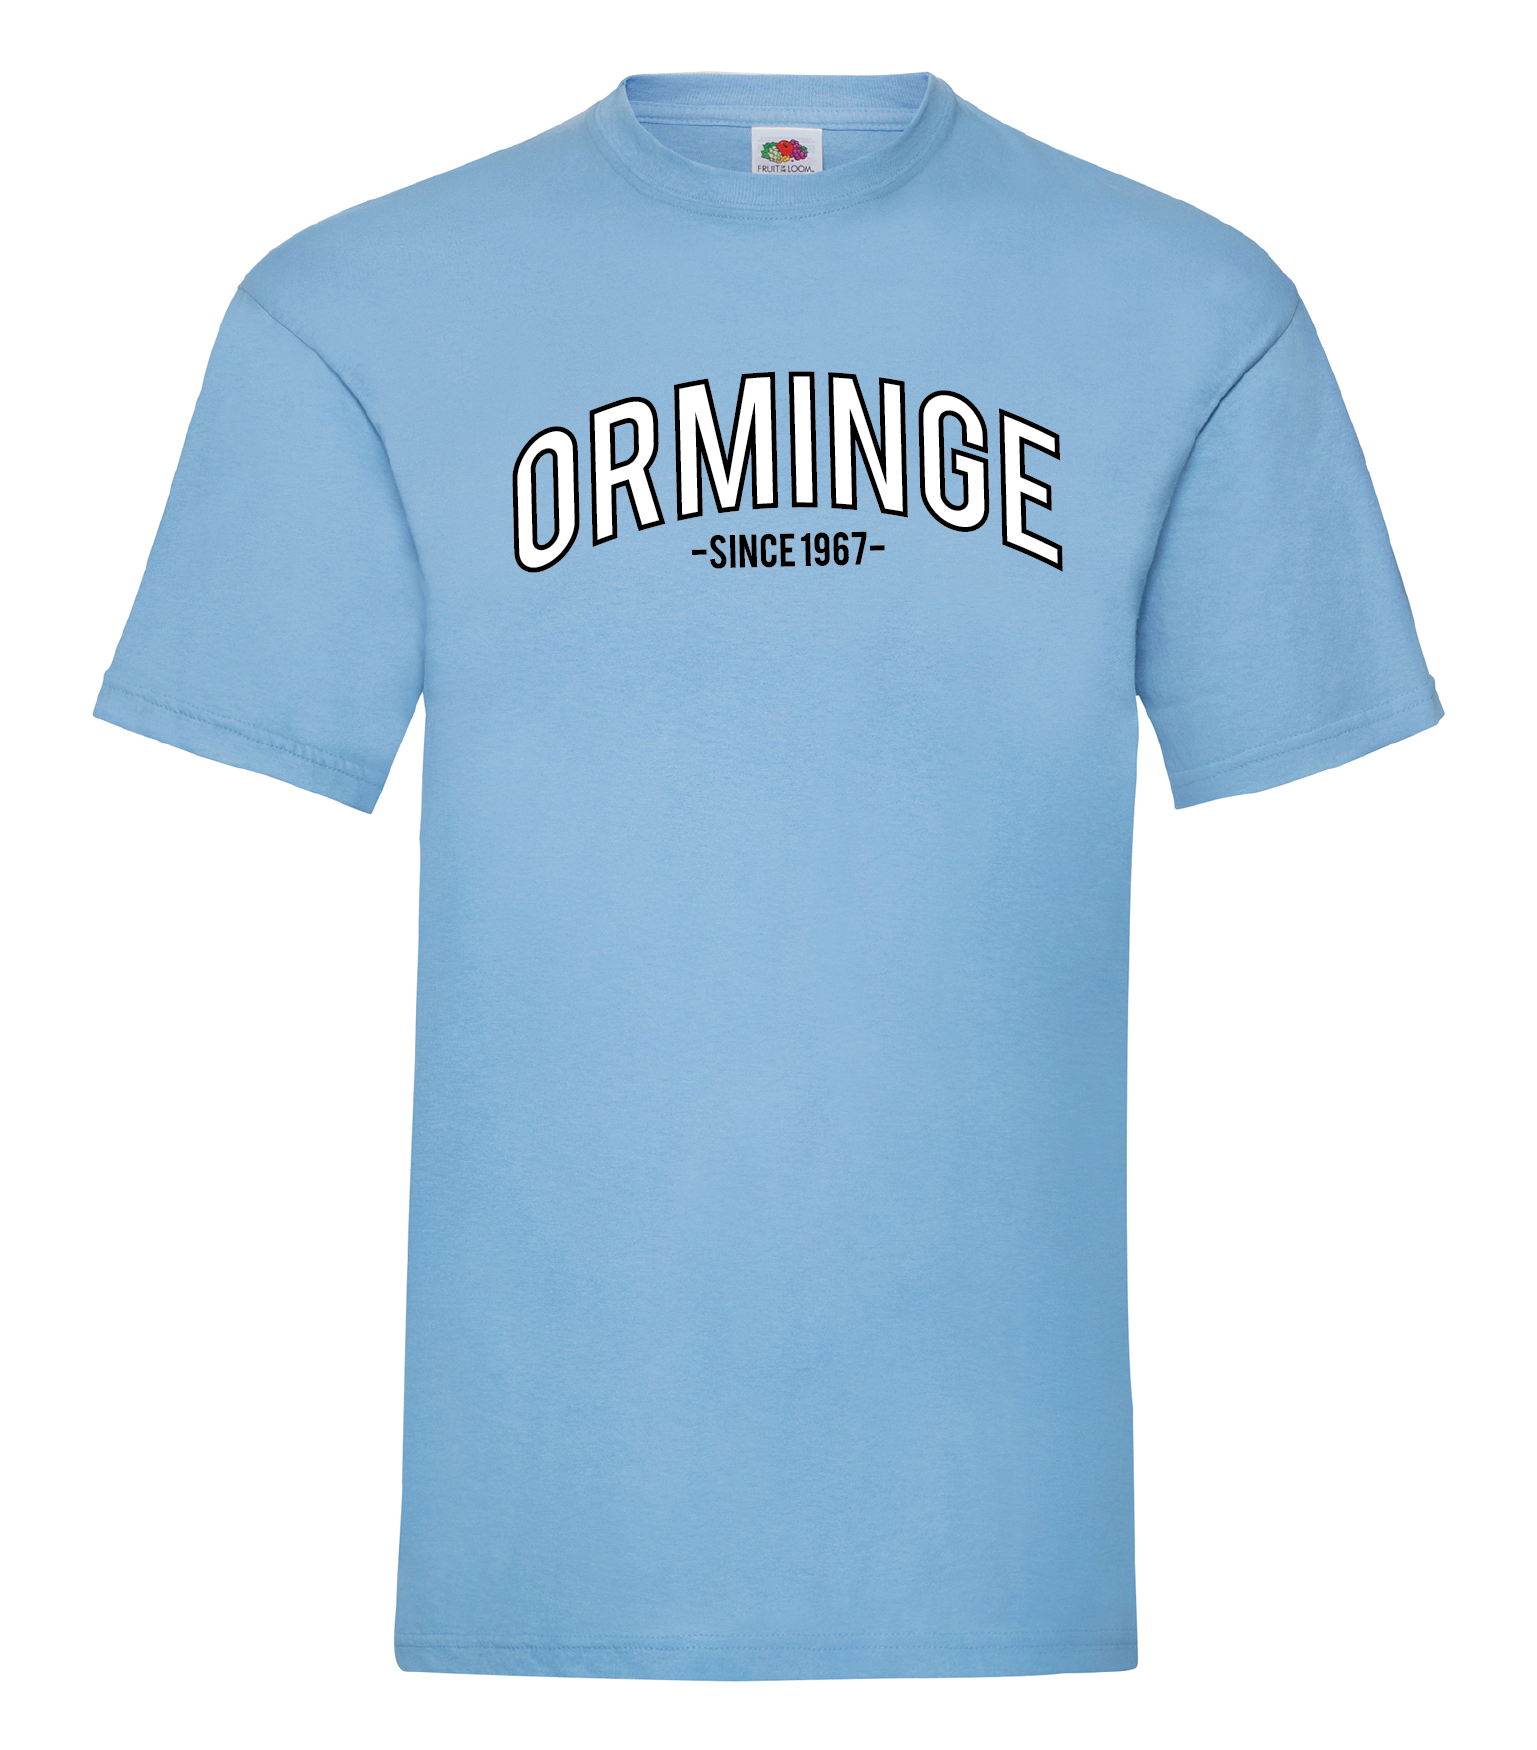 orminge_ljusblå_t-shirt